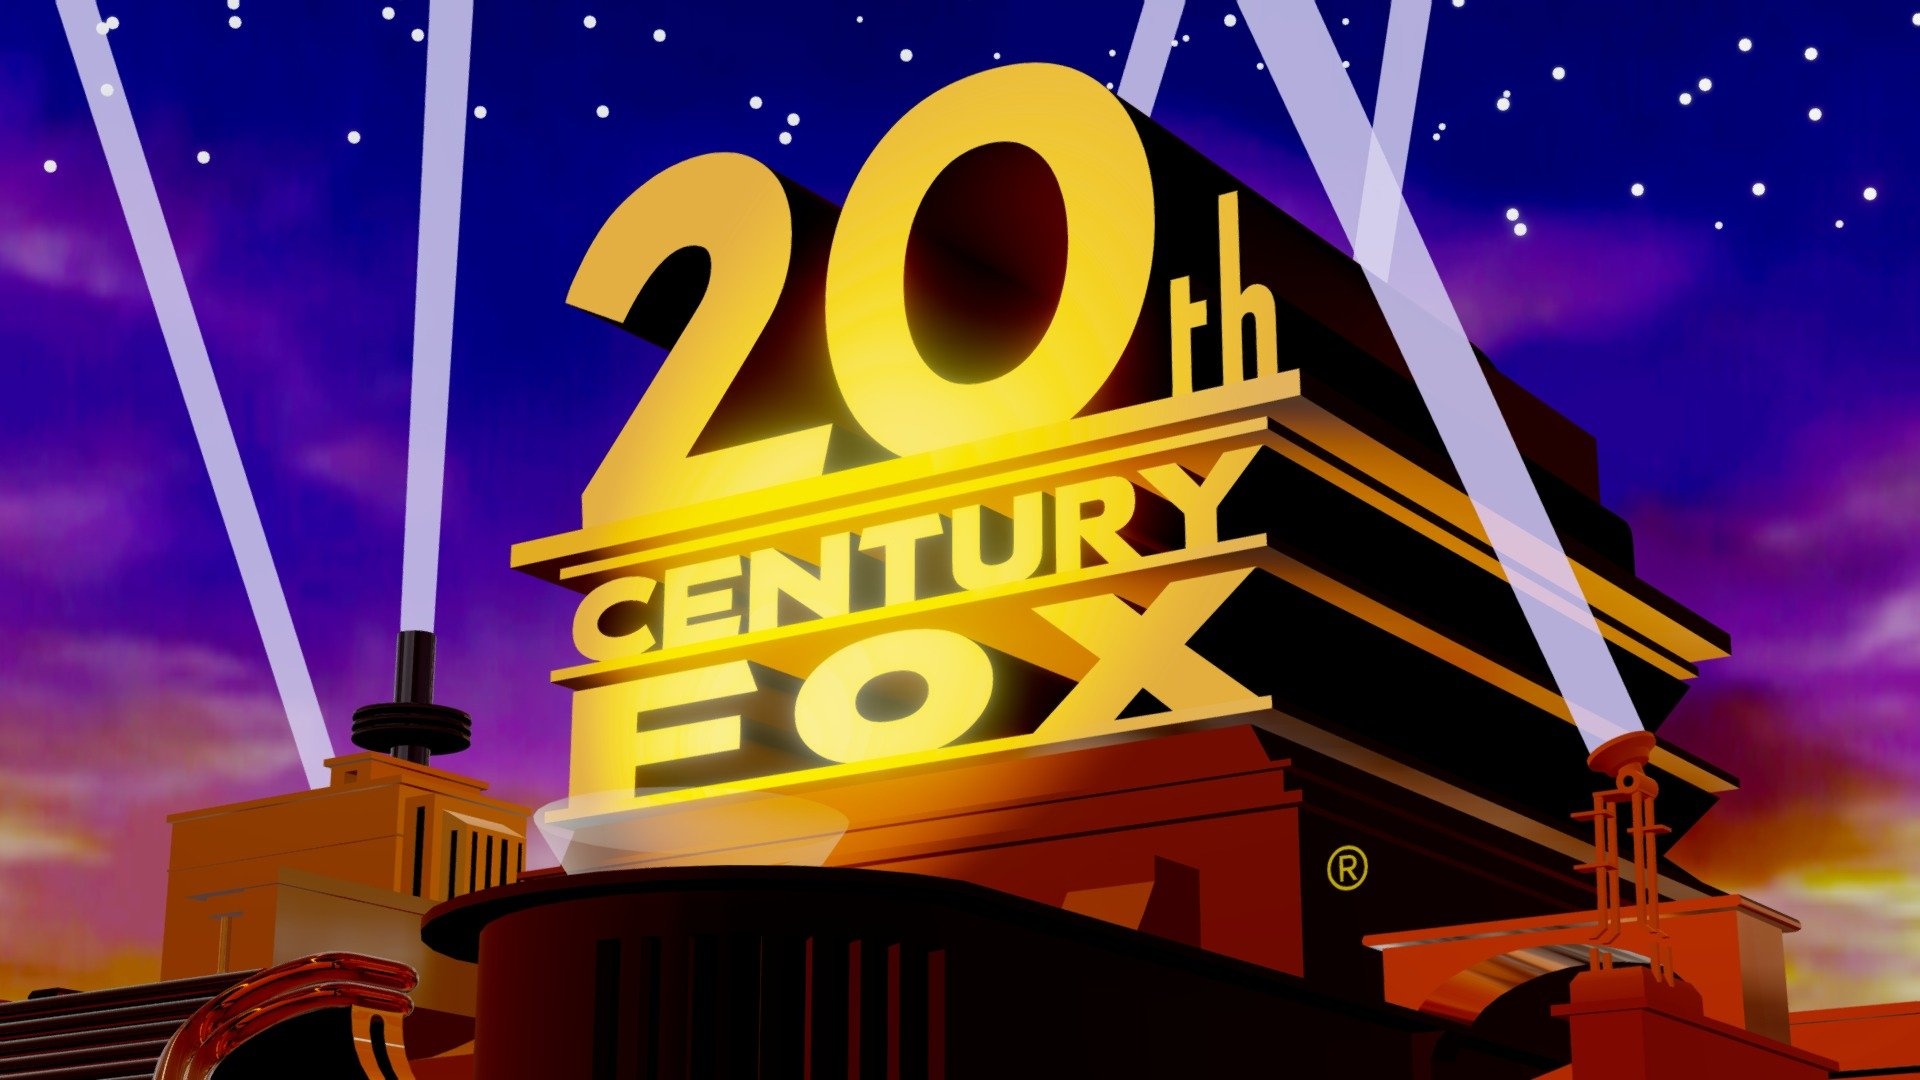 20th Century Fox 1994-2010, 3D model, Digital recreation, Fan tribute, 1920x1080 Full HD Desktop